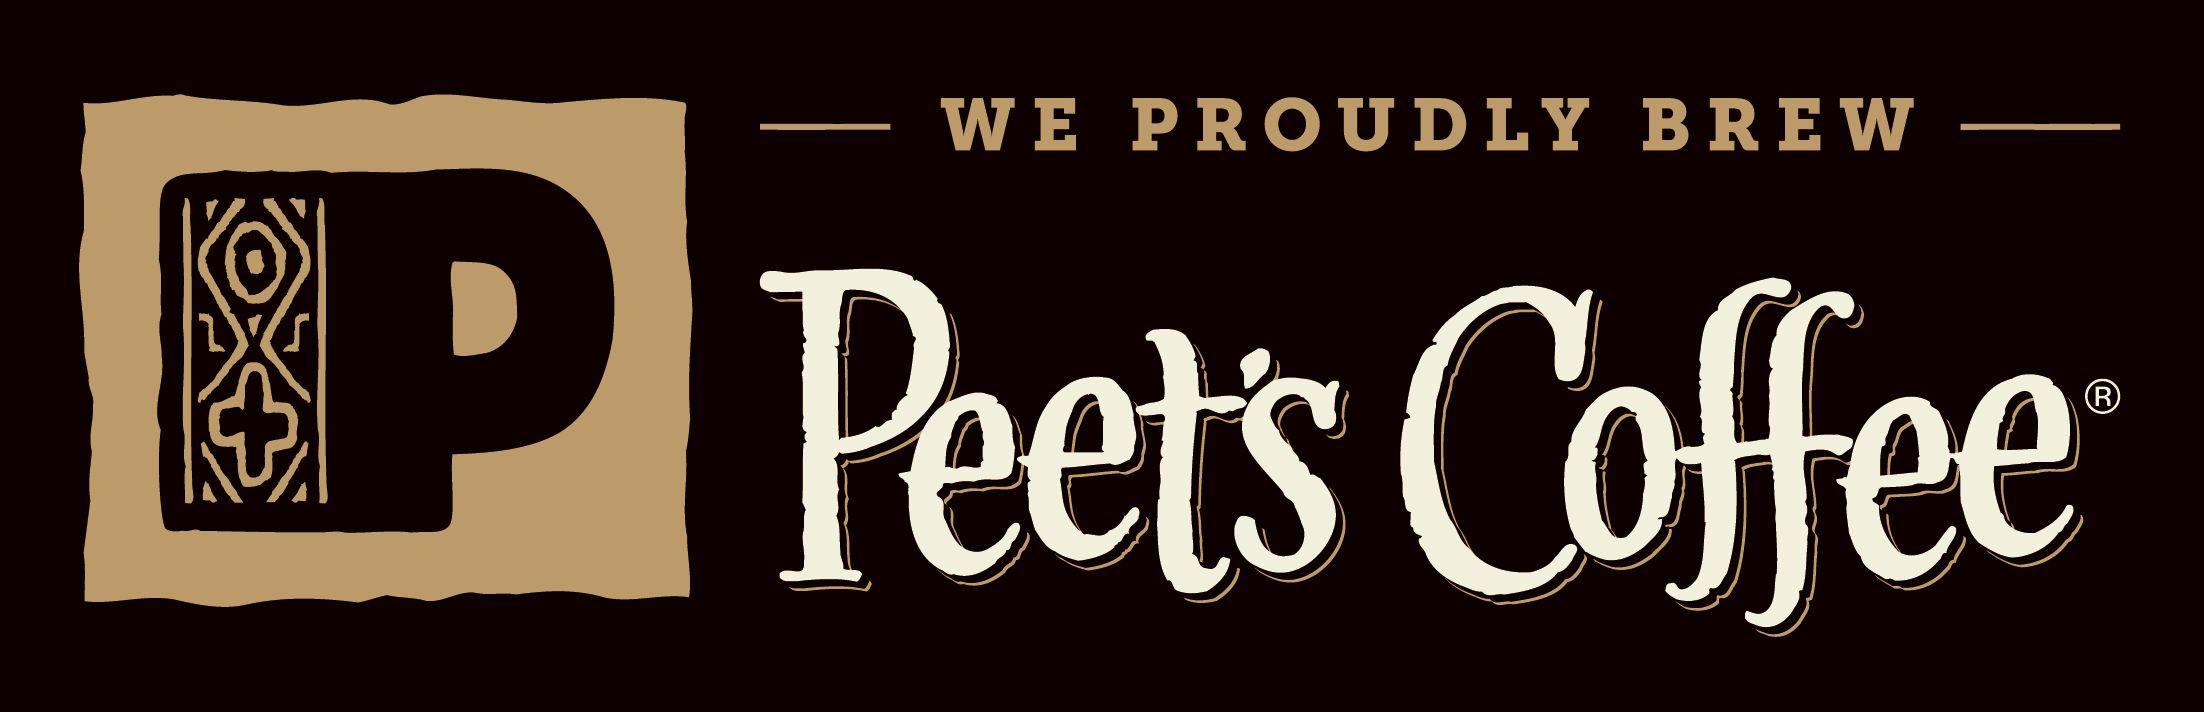 Peet's Coffee New Logo - Peet's Coffee Comes To Rancho Mission Viejo Mission Viejo